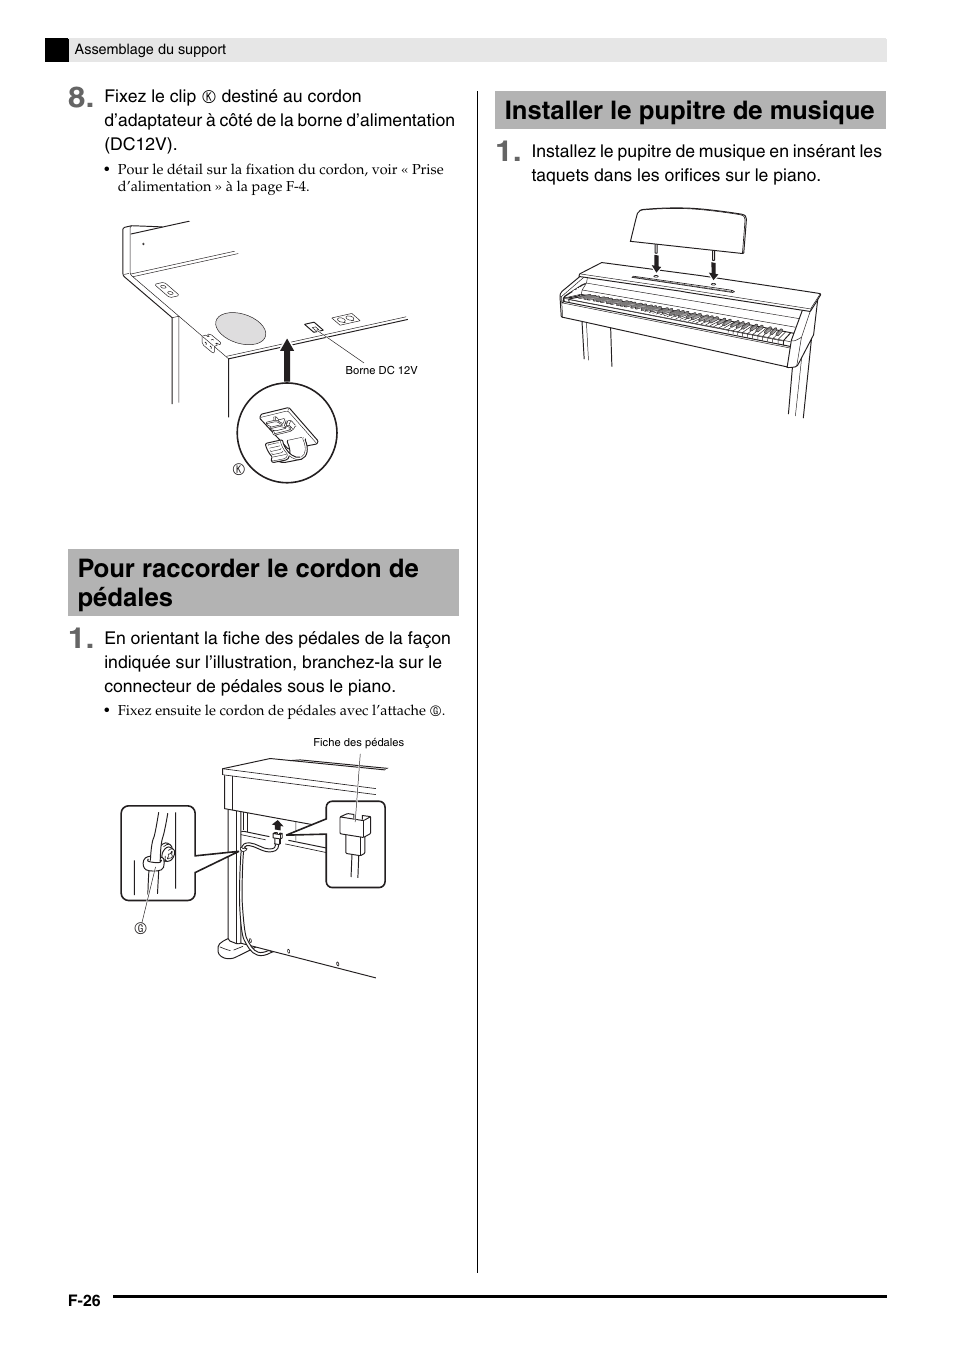 Pour raccorder le cordon de pédales, Installer le pupitre de musique | Casio AP-200 Manuel d'utilisation | Page 28 / 34